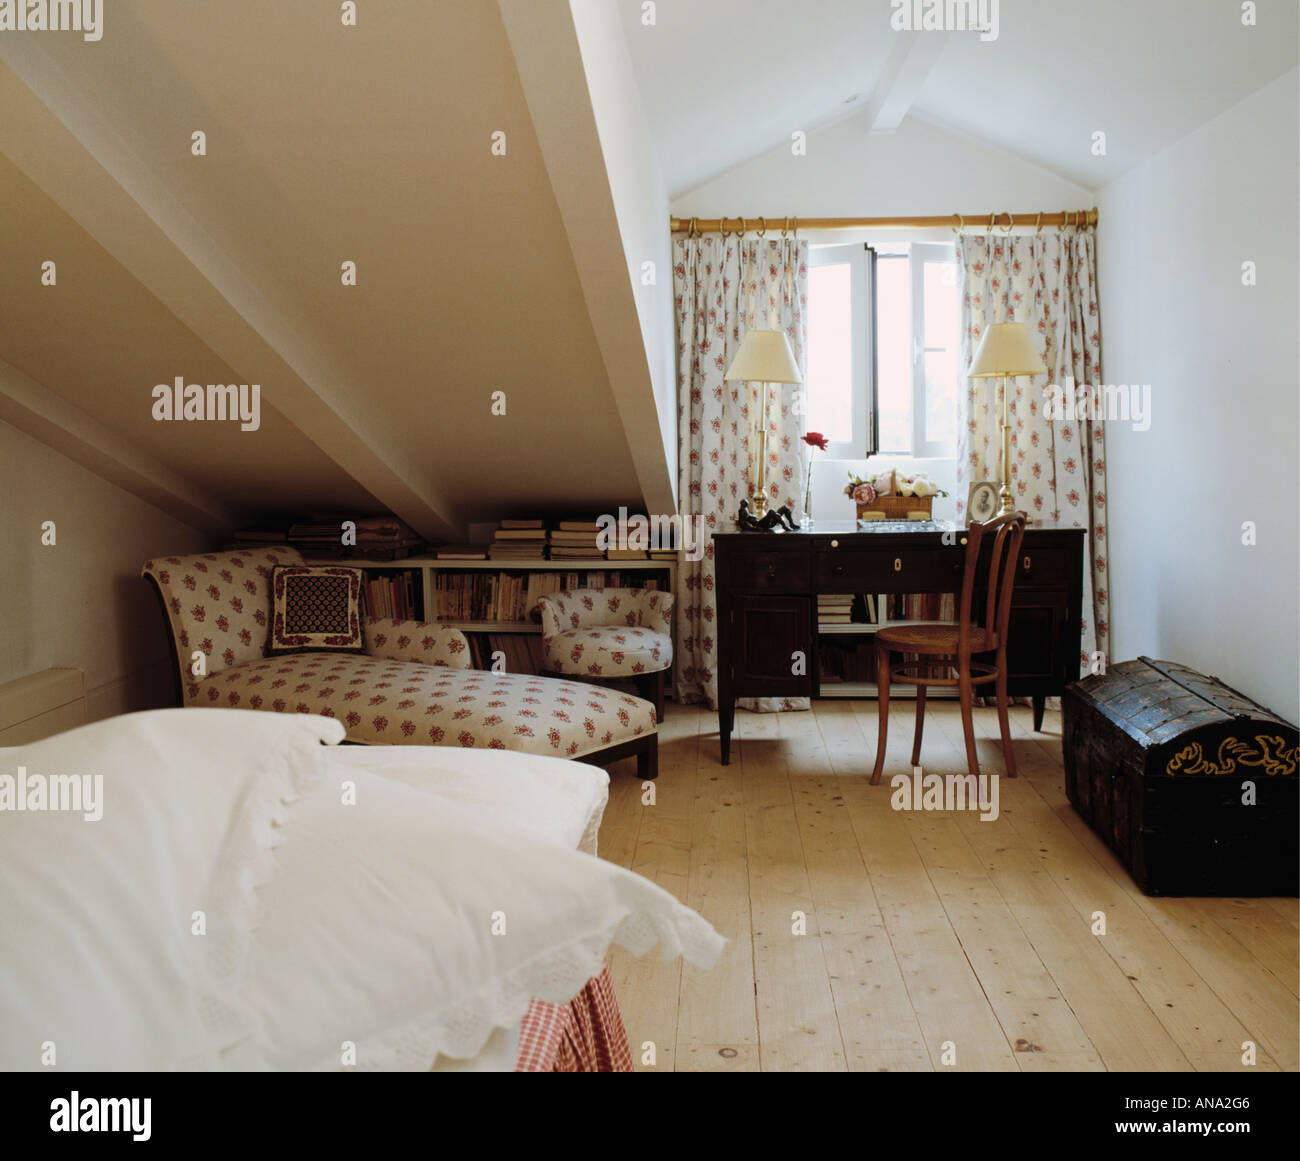 Tende a motivi geometrici e chaiselongue in mansarda camera da letto con pavimento in legno Foto Stock